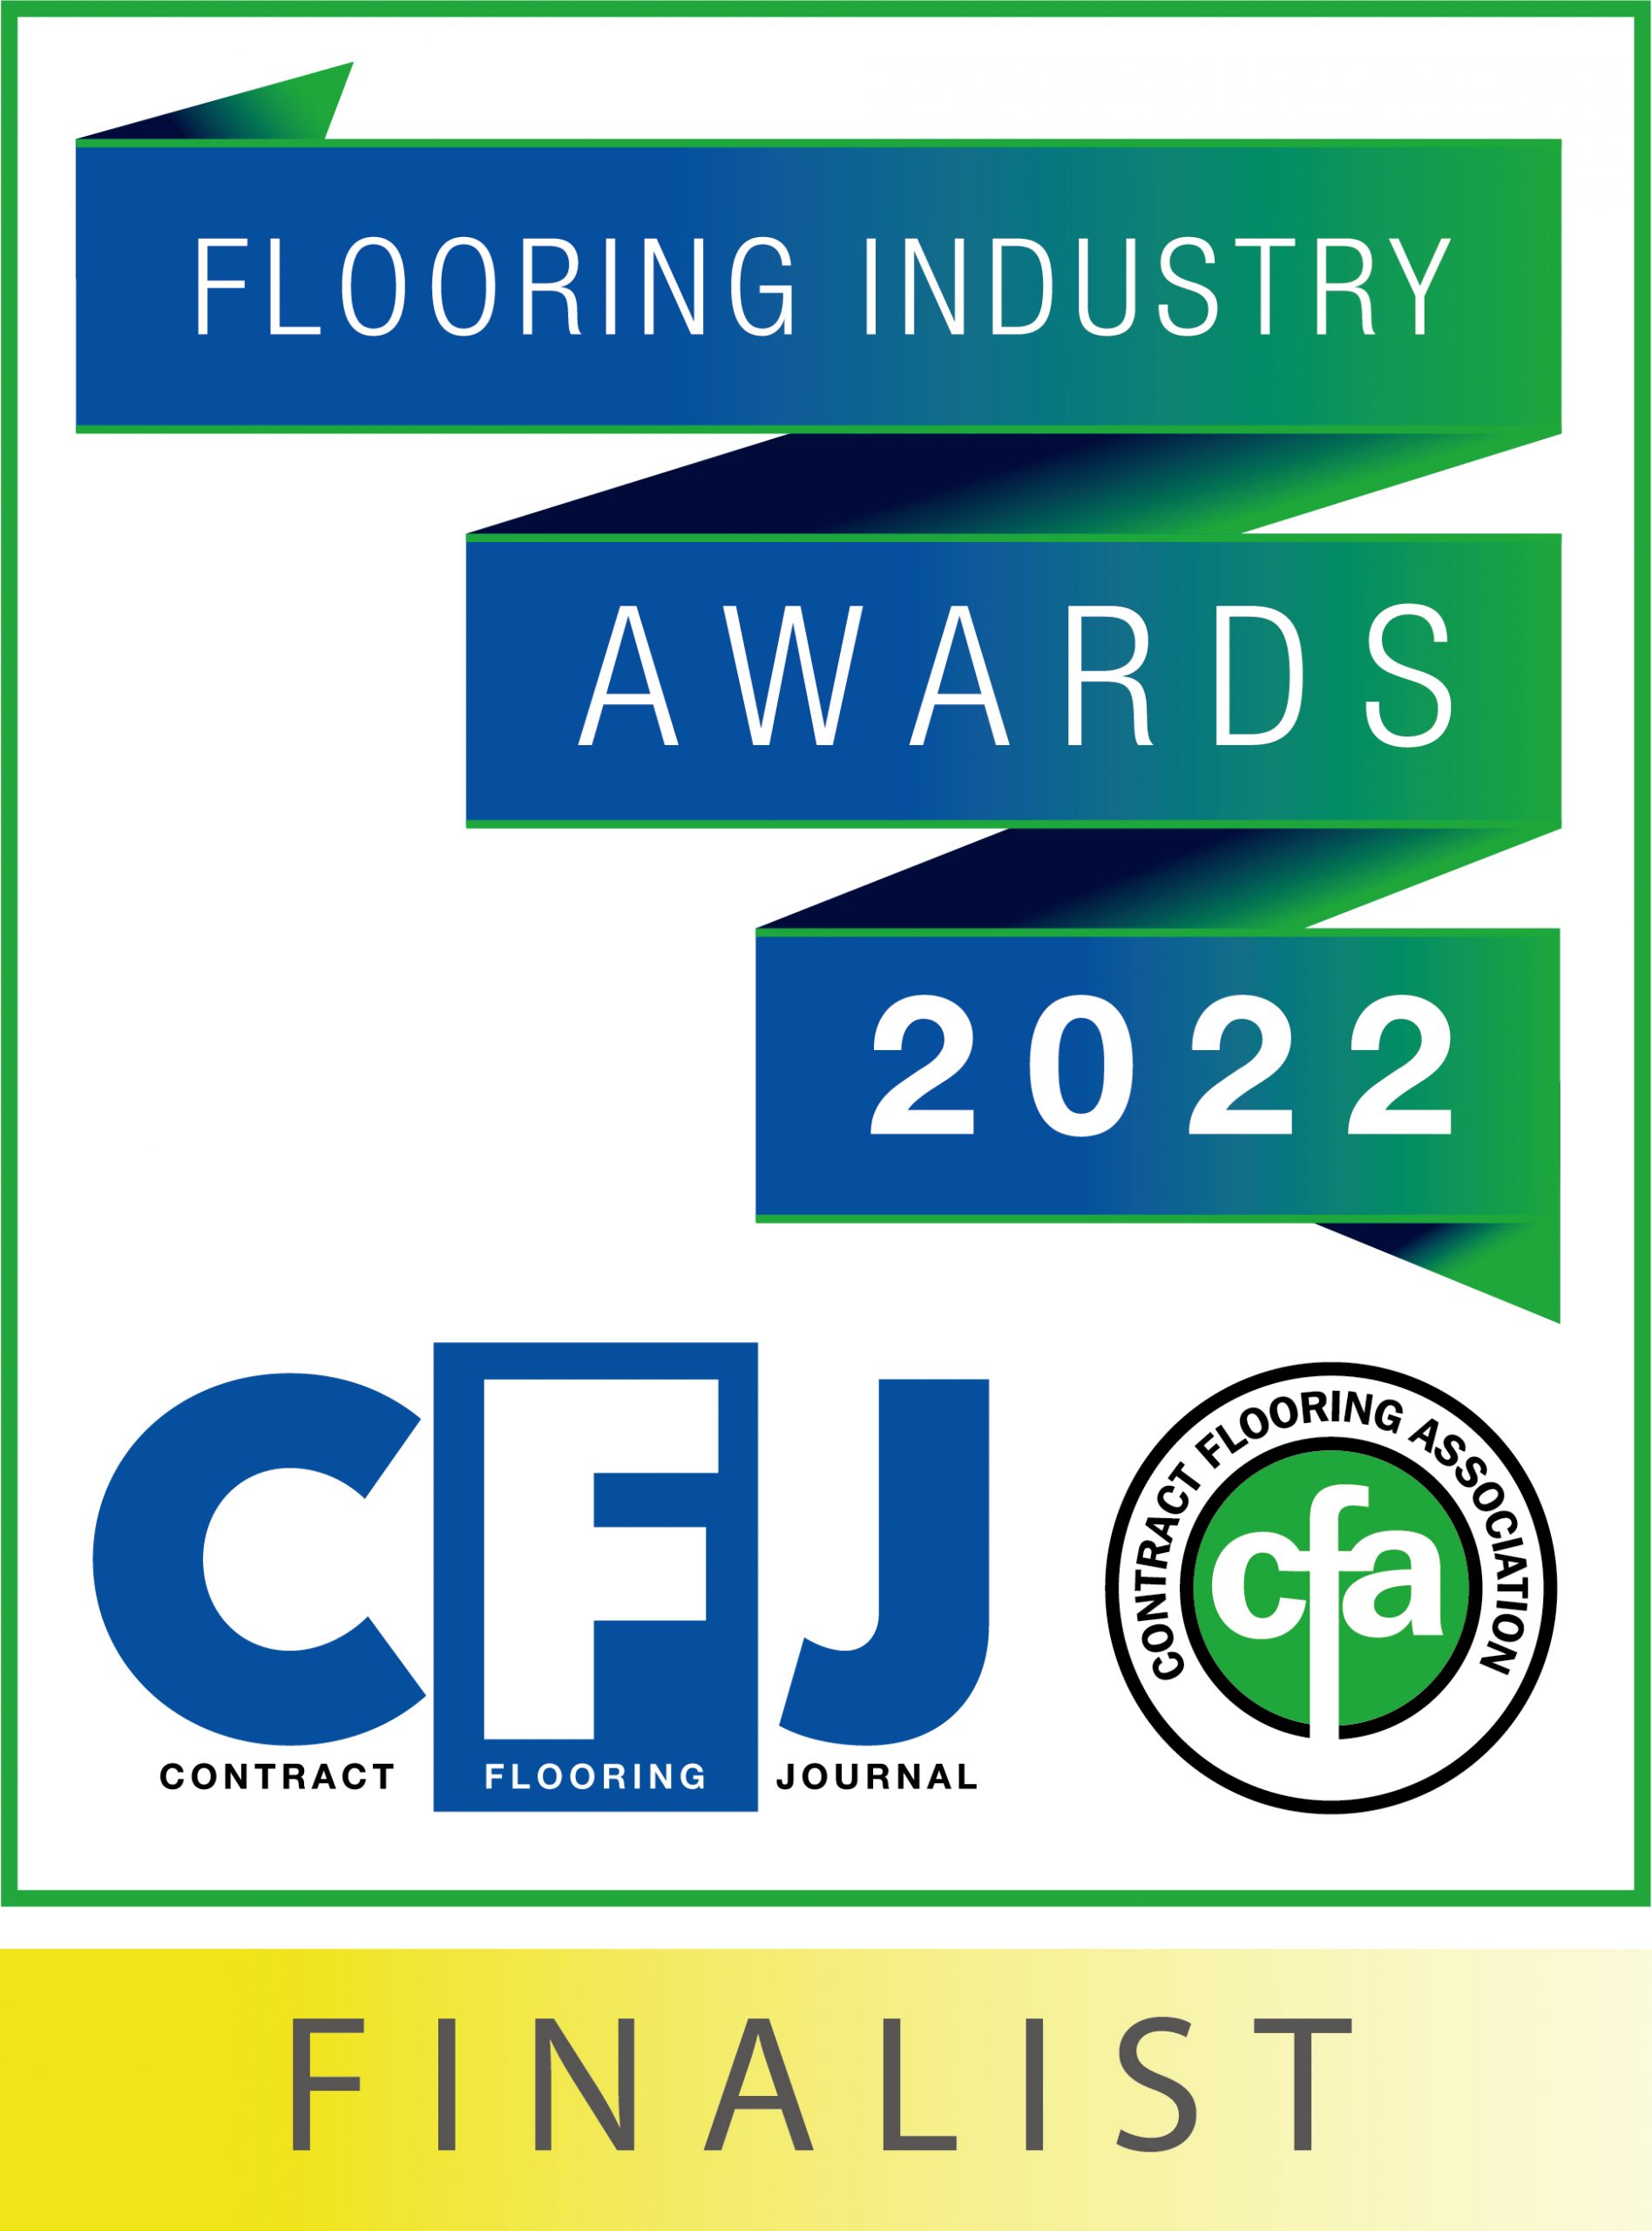 CFJ/CFA awards